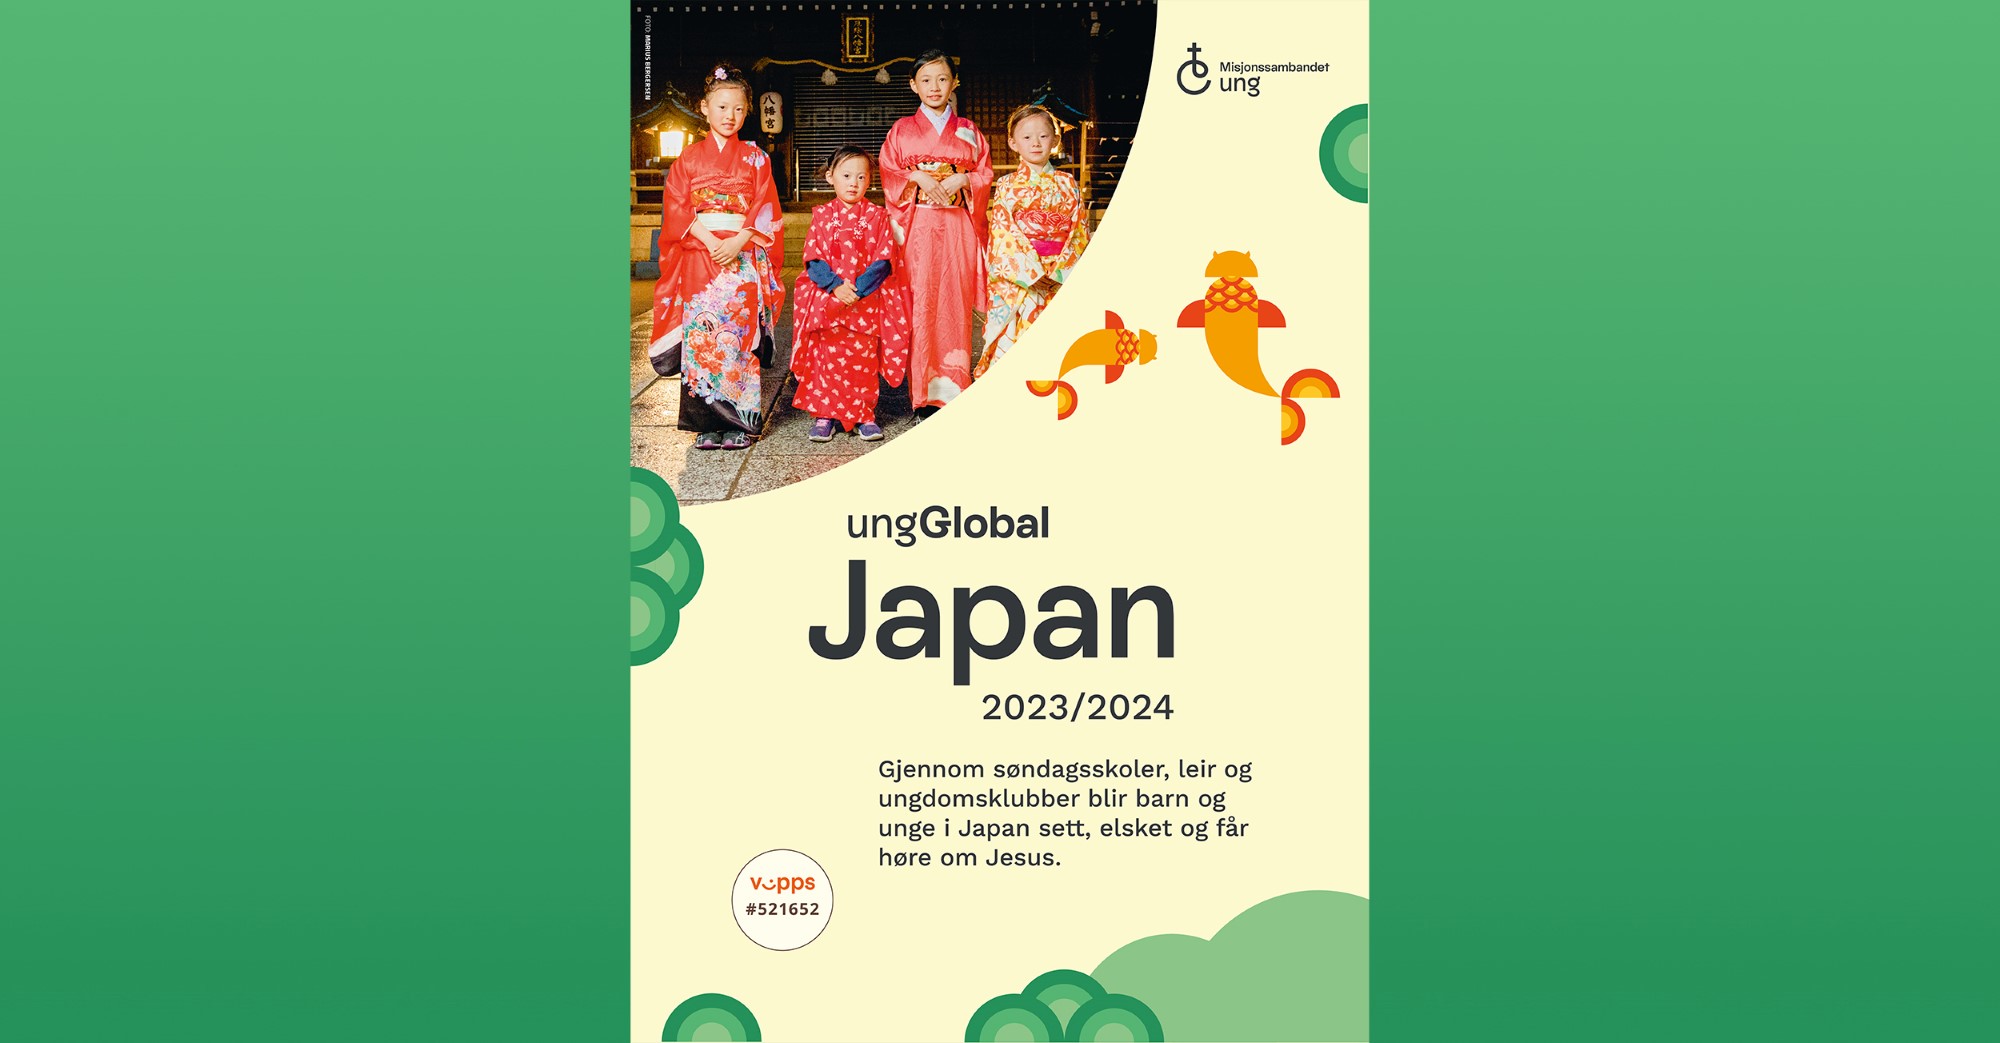 Plakat ungGlobal Japan 23/24 jenter i kimono